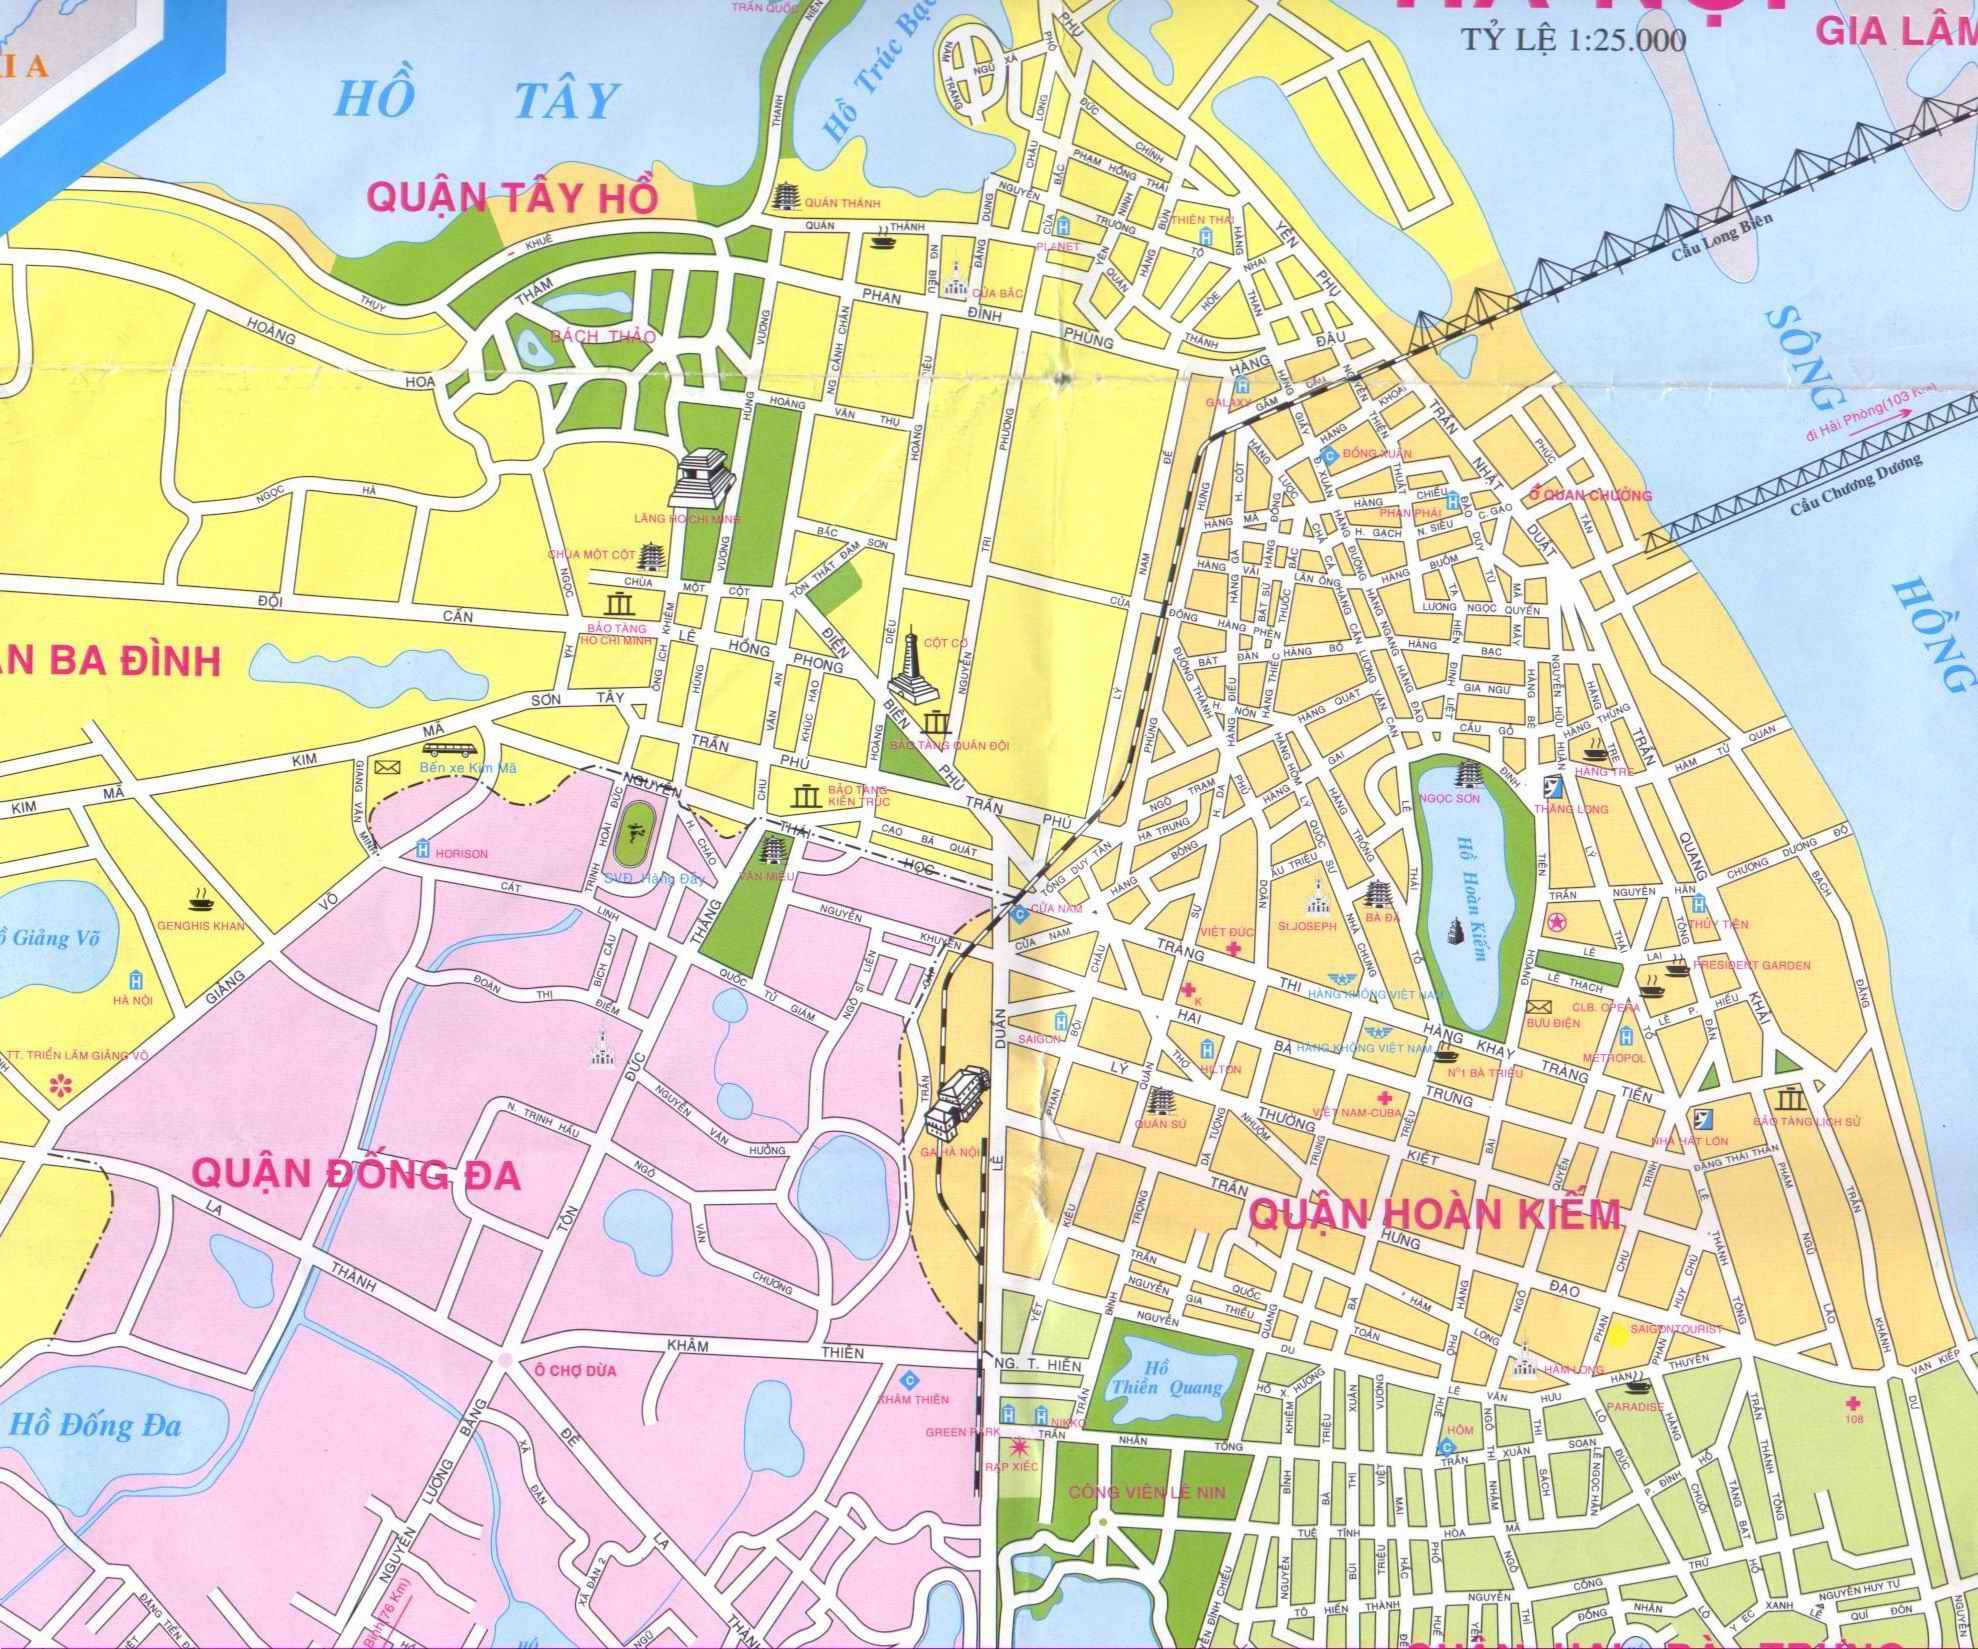 Hanoi City Map